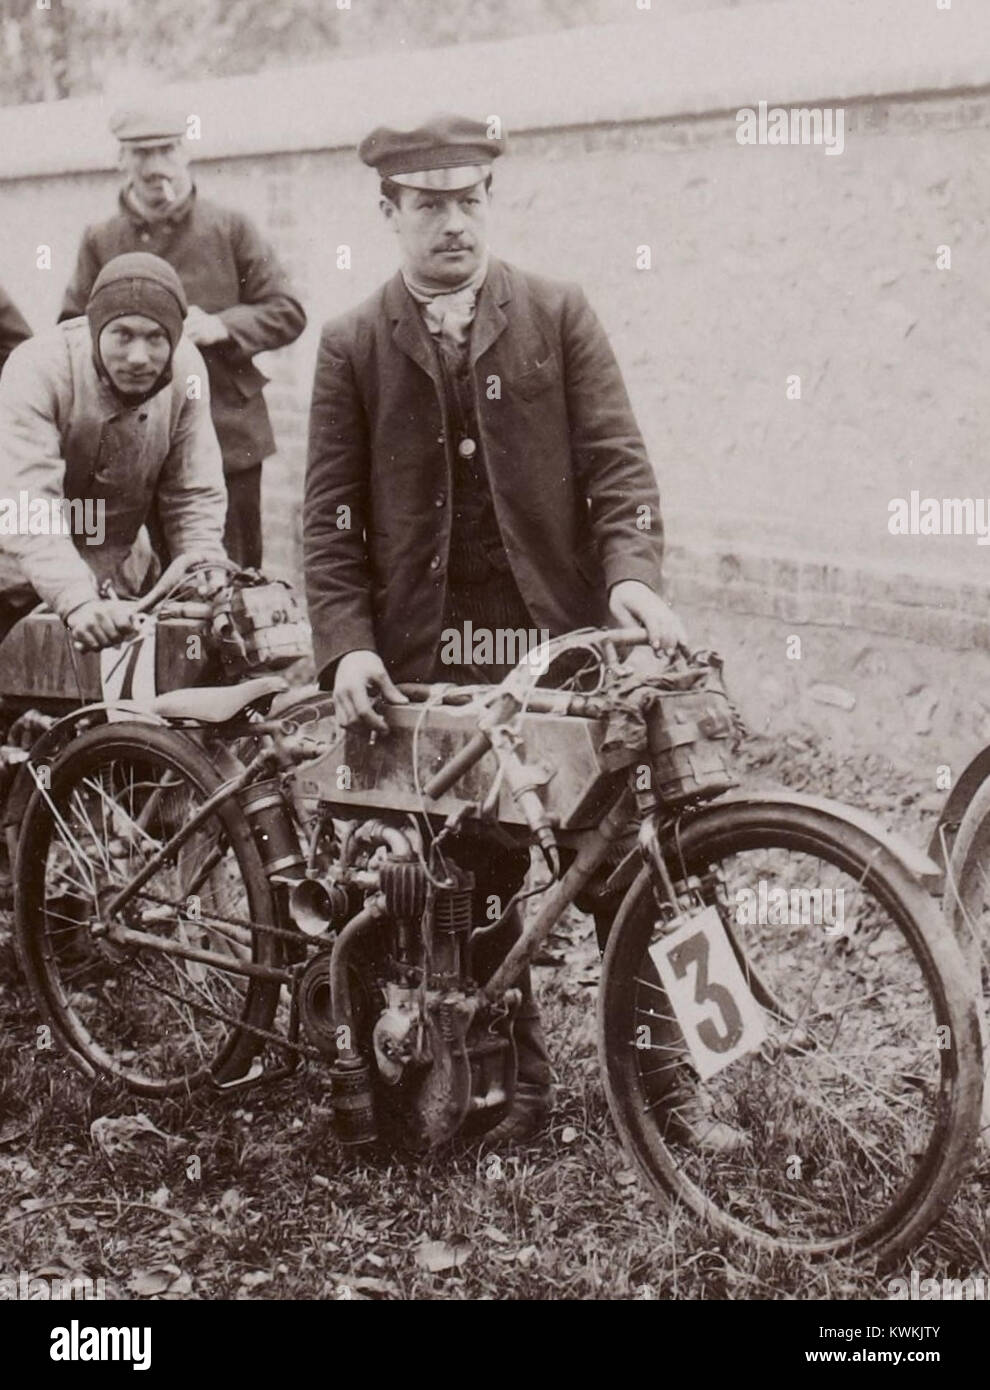 Giuseppe Collomb vainqueur sur Magali de la catégorie Motocyclettes da ⅓ de litro, à la Côte de Gaillon 1904 Foto Stock